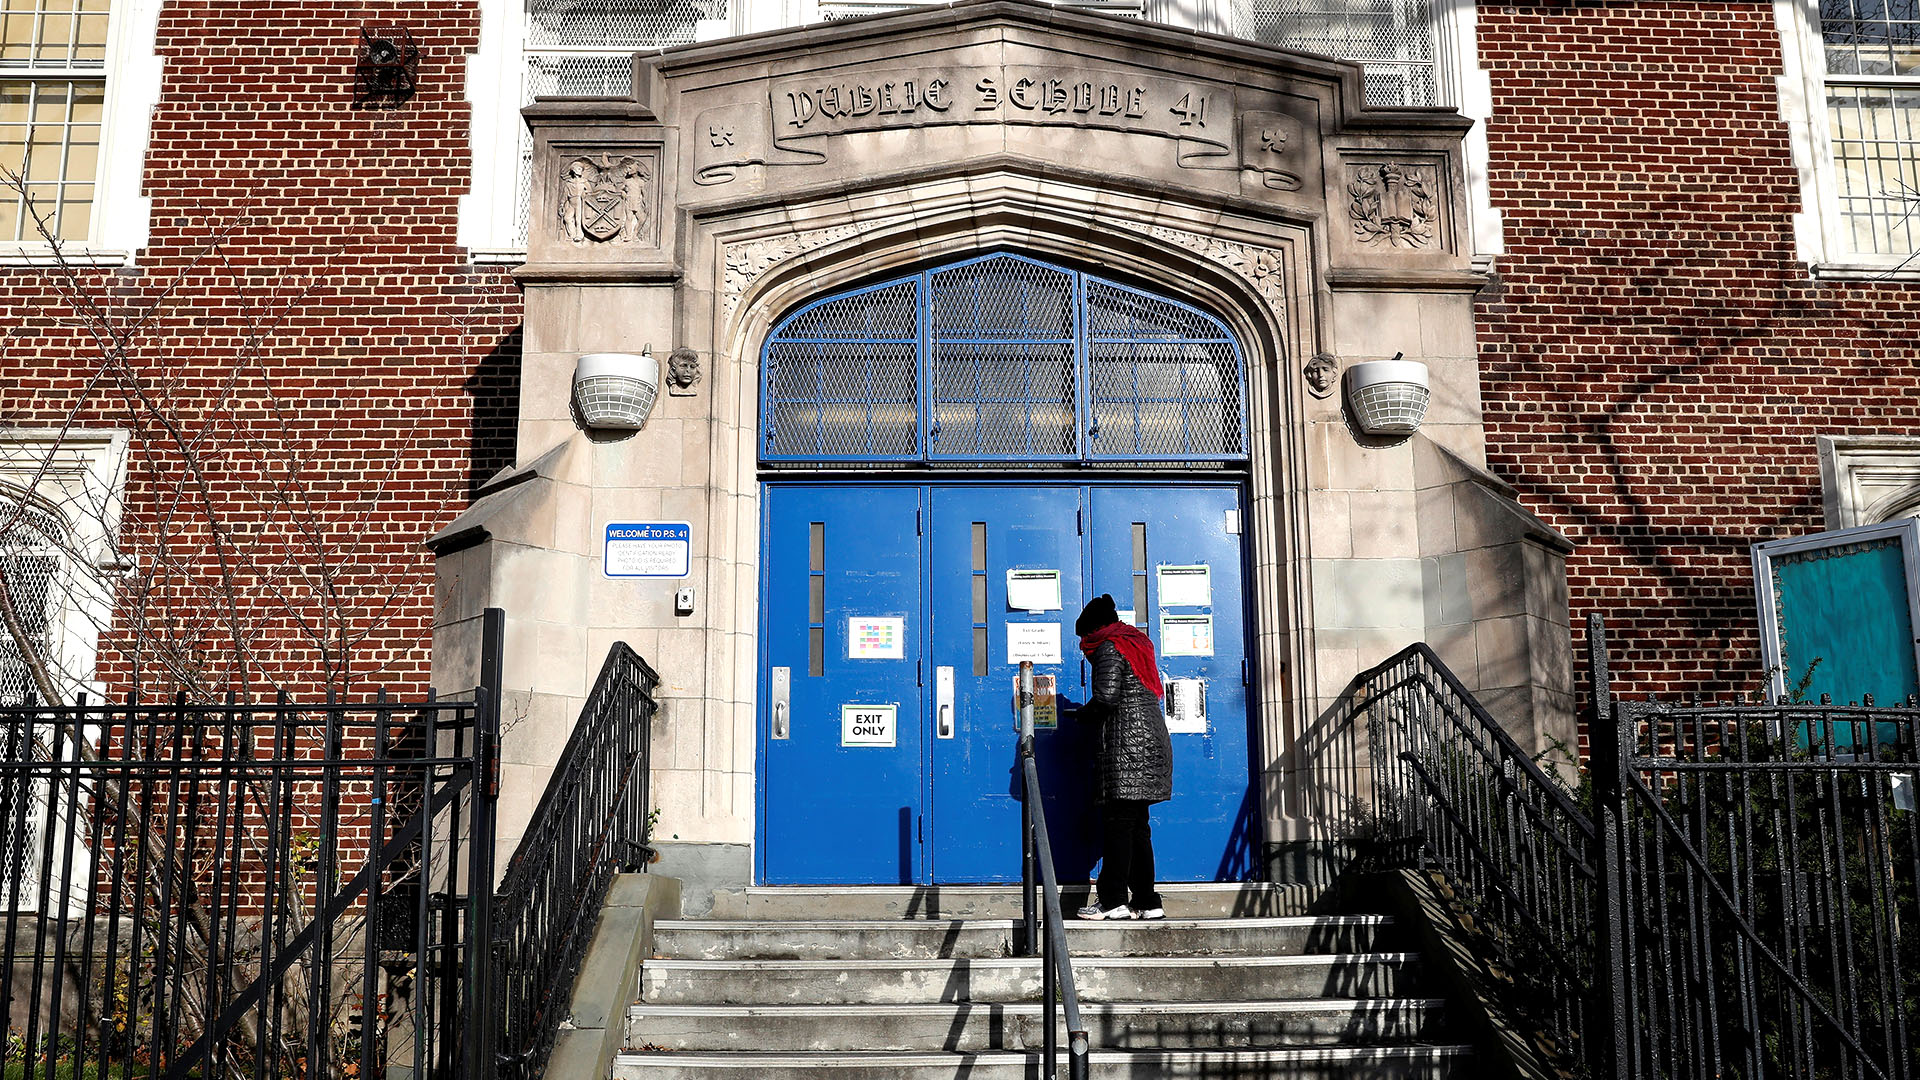 La escuela Pública 41 en el barrio de Queens, Nueva York. REUTERS/Shannon Stapleton